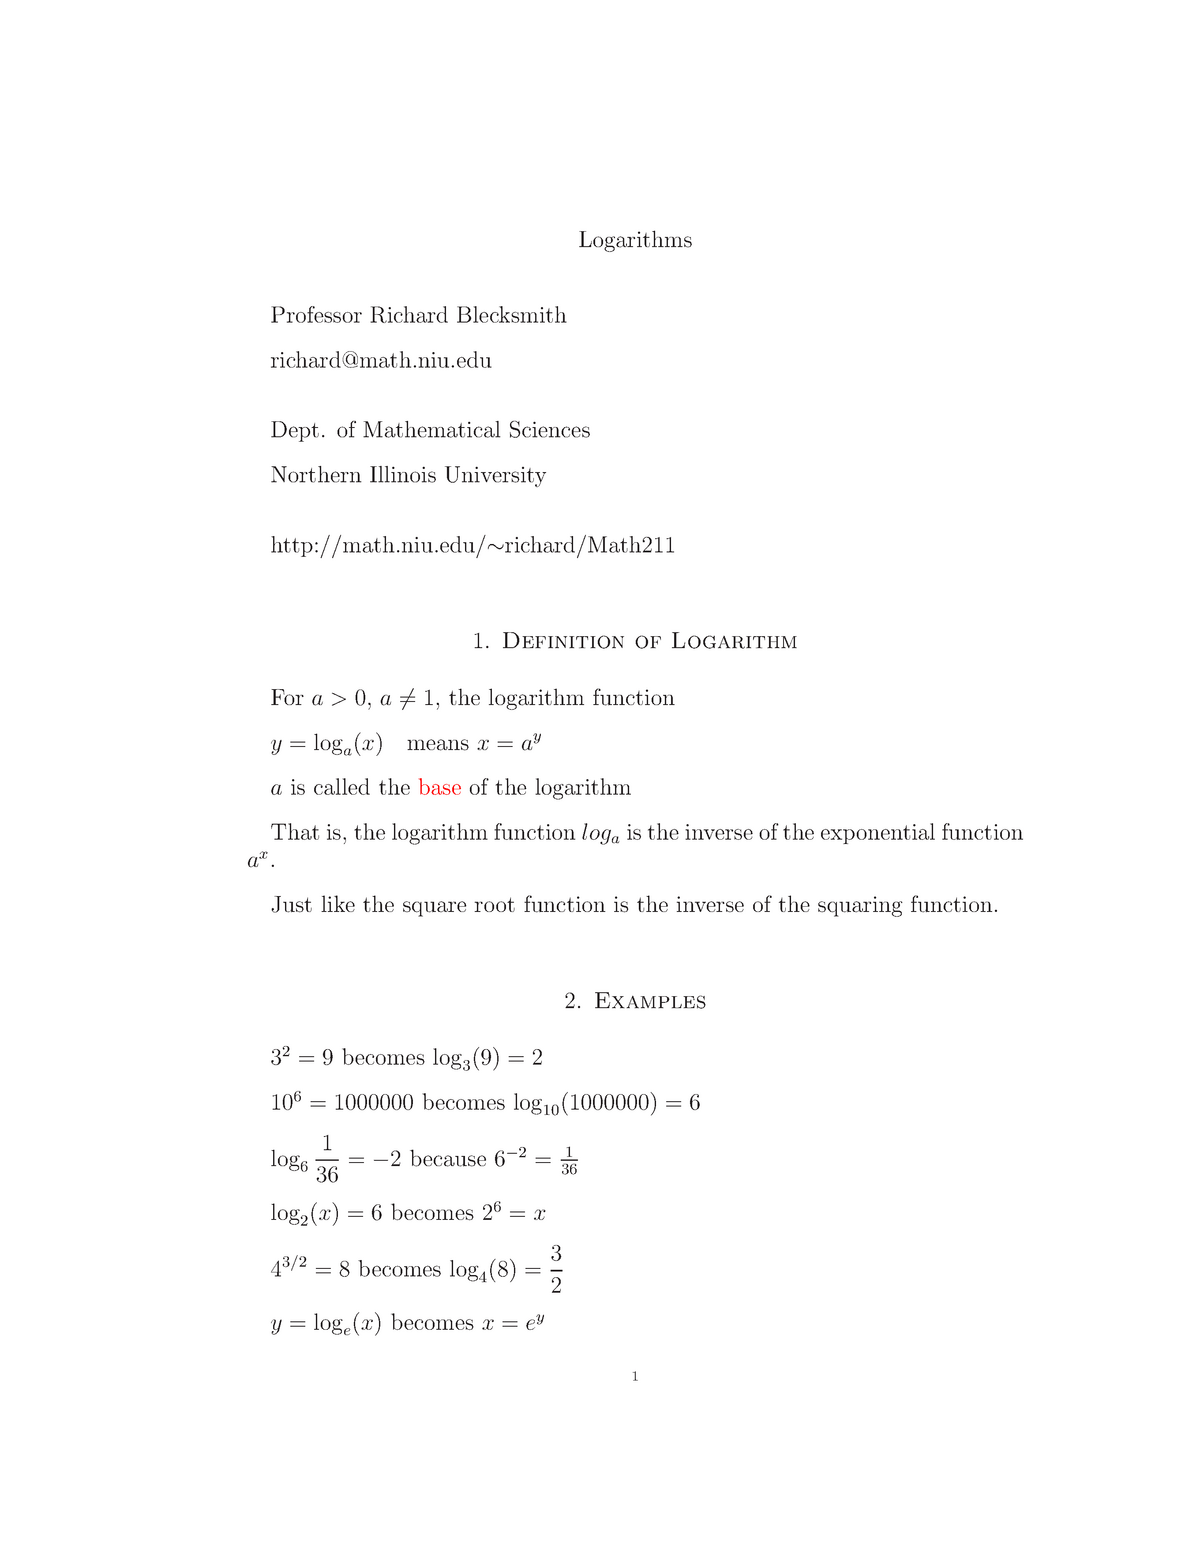 Lecture Notes Lecture Logarithms Studocu